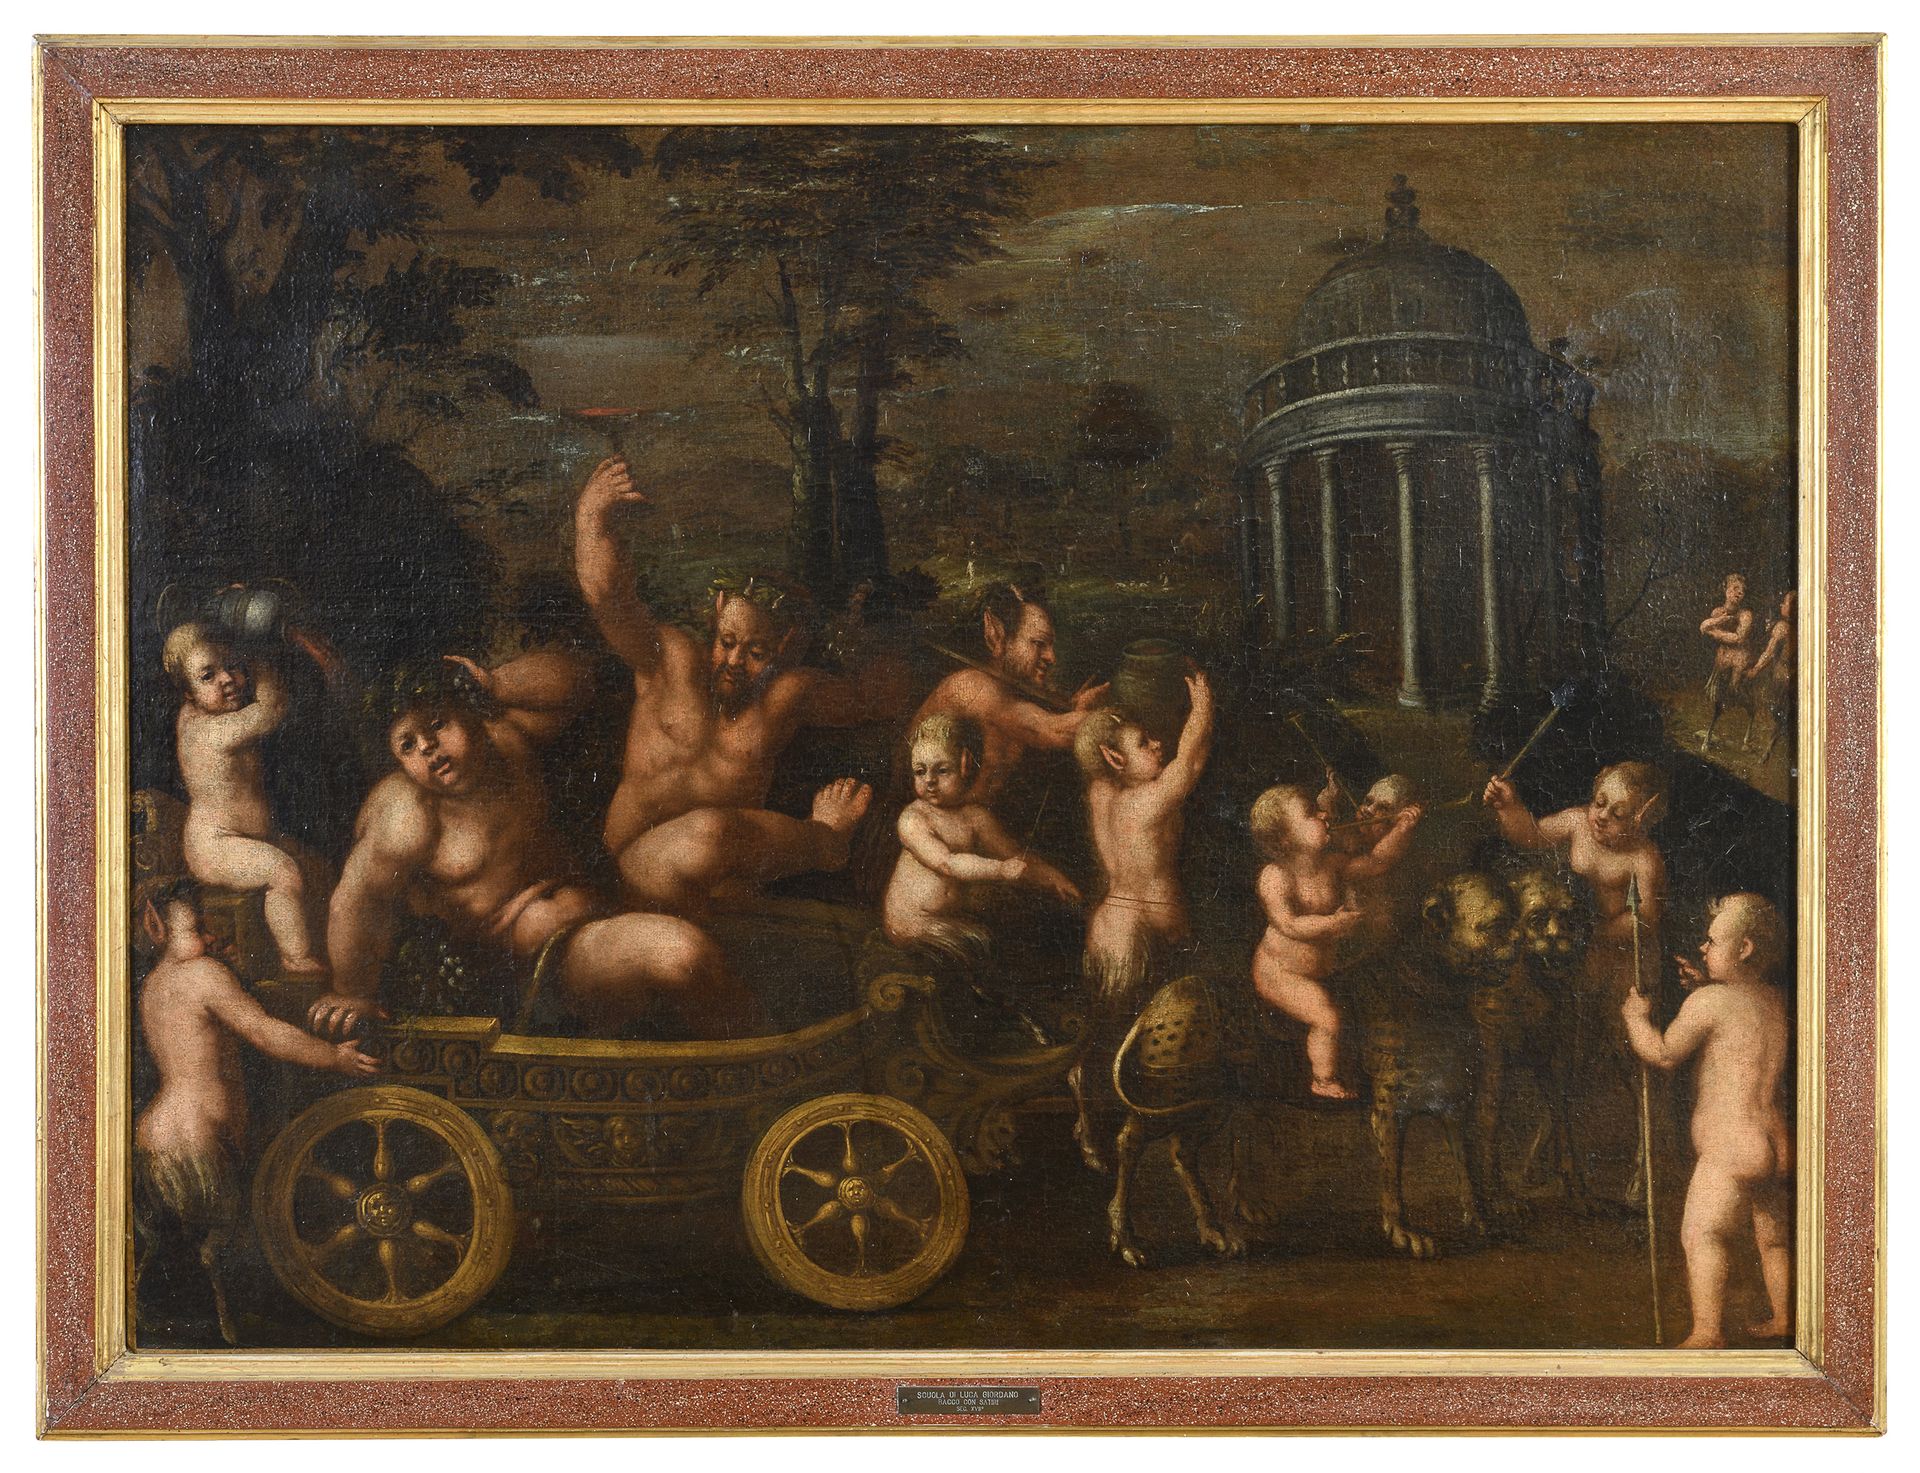 Null 佛兰德画家，18世纪



巴库斯与神庙的凯旋

布面油画，69 x 94厘米

漆面框架



起源

罗马家族



画的状况

二十世纪的修饰。&hellip;